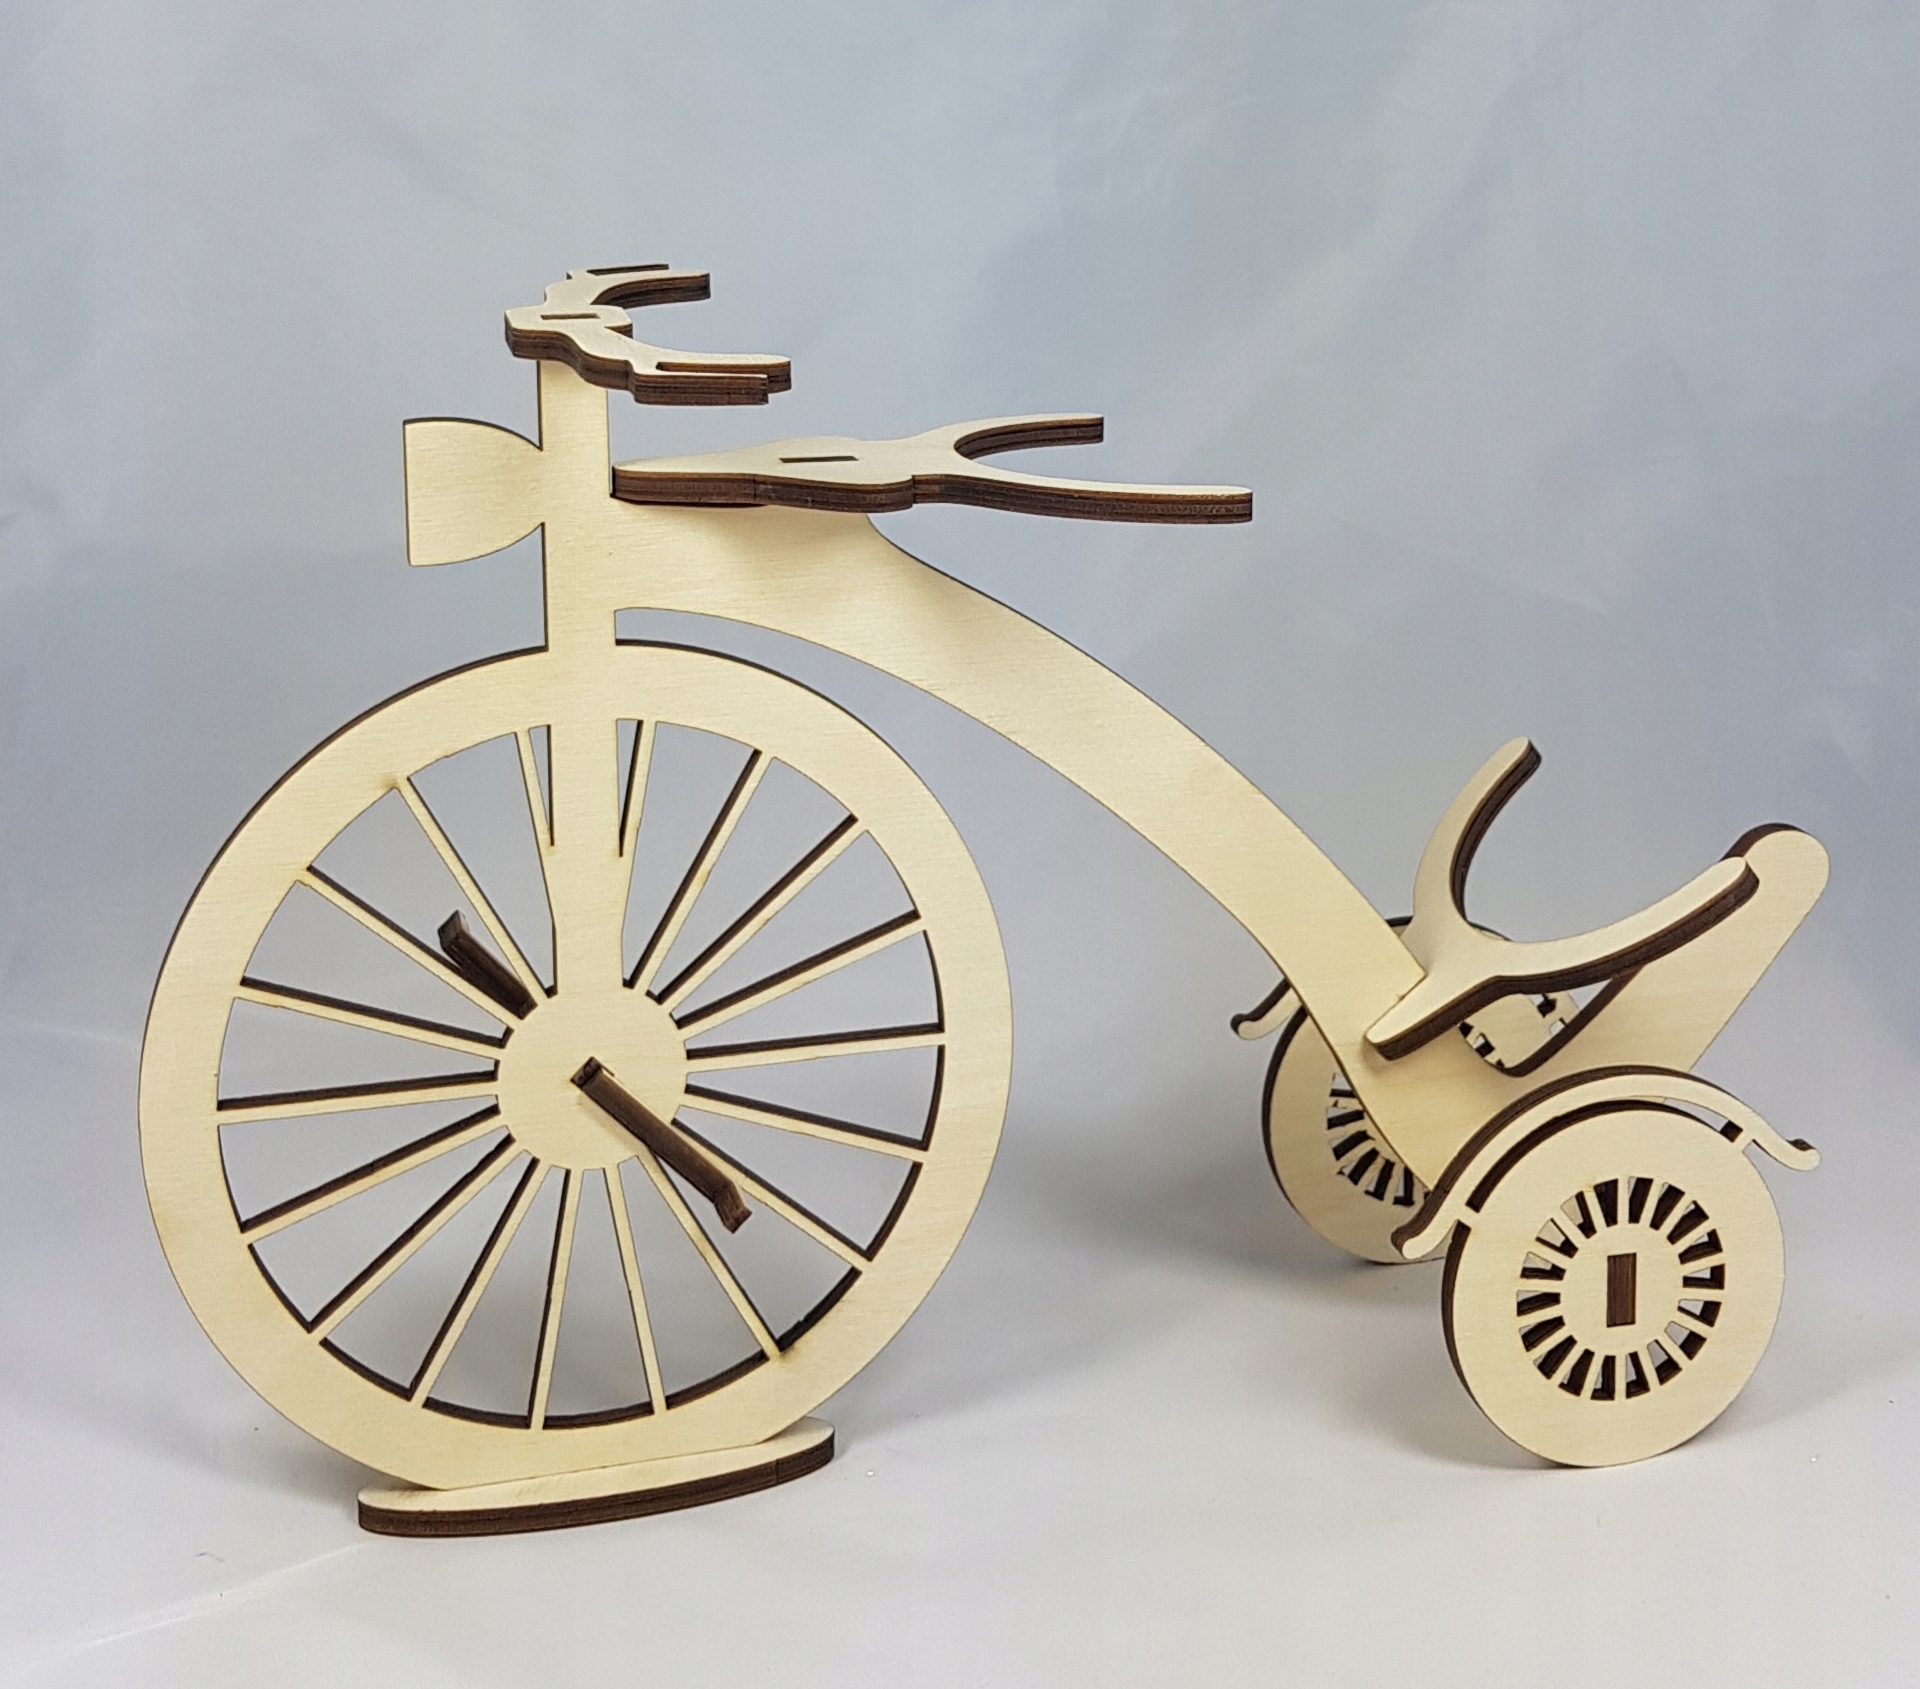 Деревянный велосипед